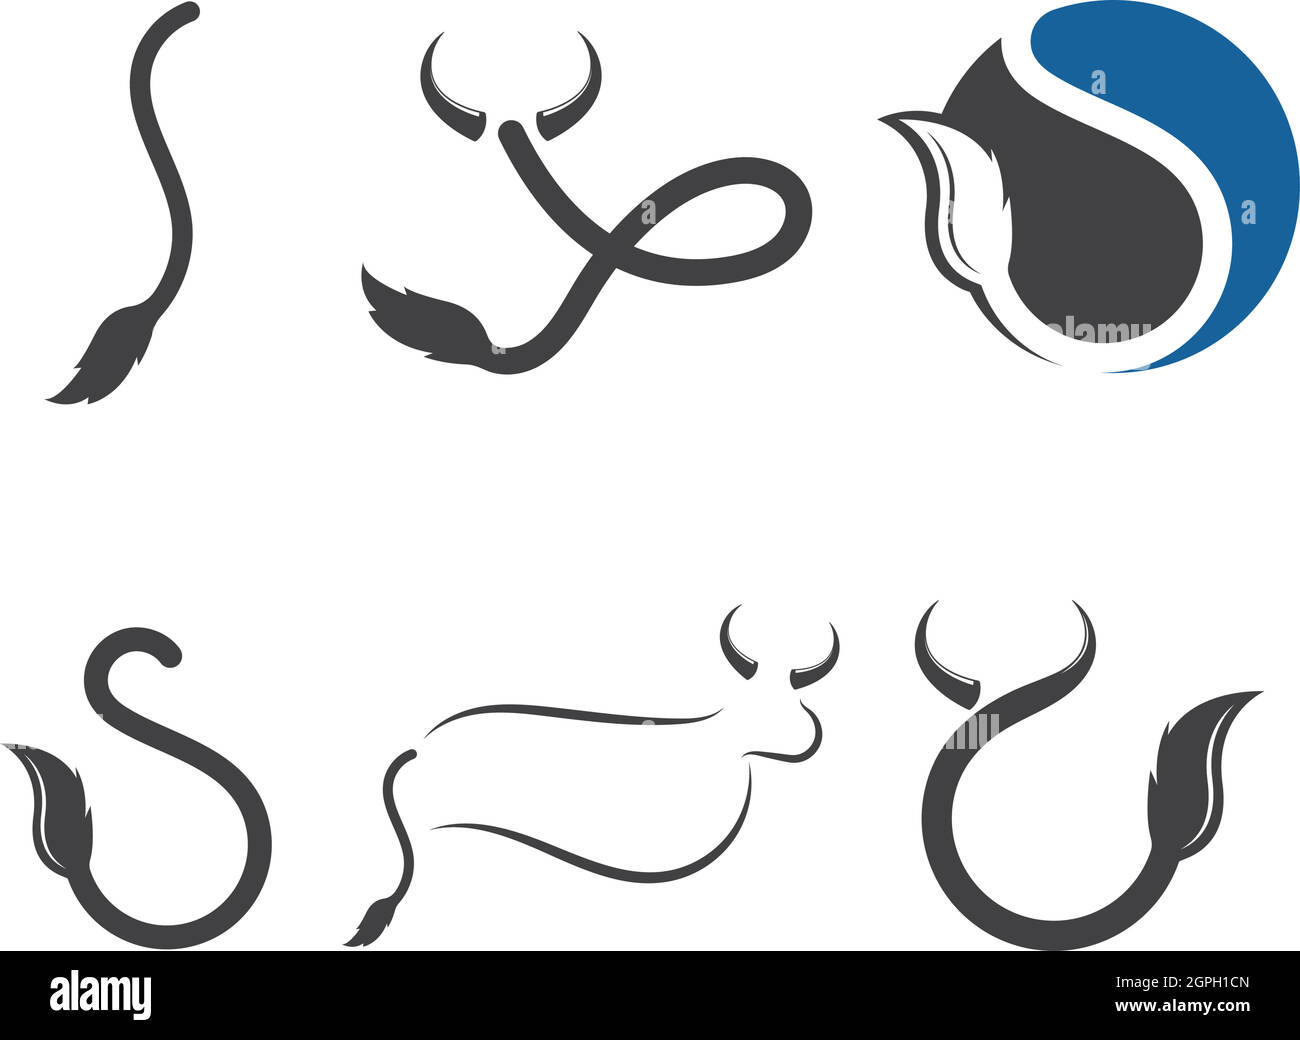 Vektorgrafik für das Cow Tail Logo Stock Vektor